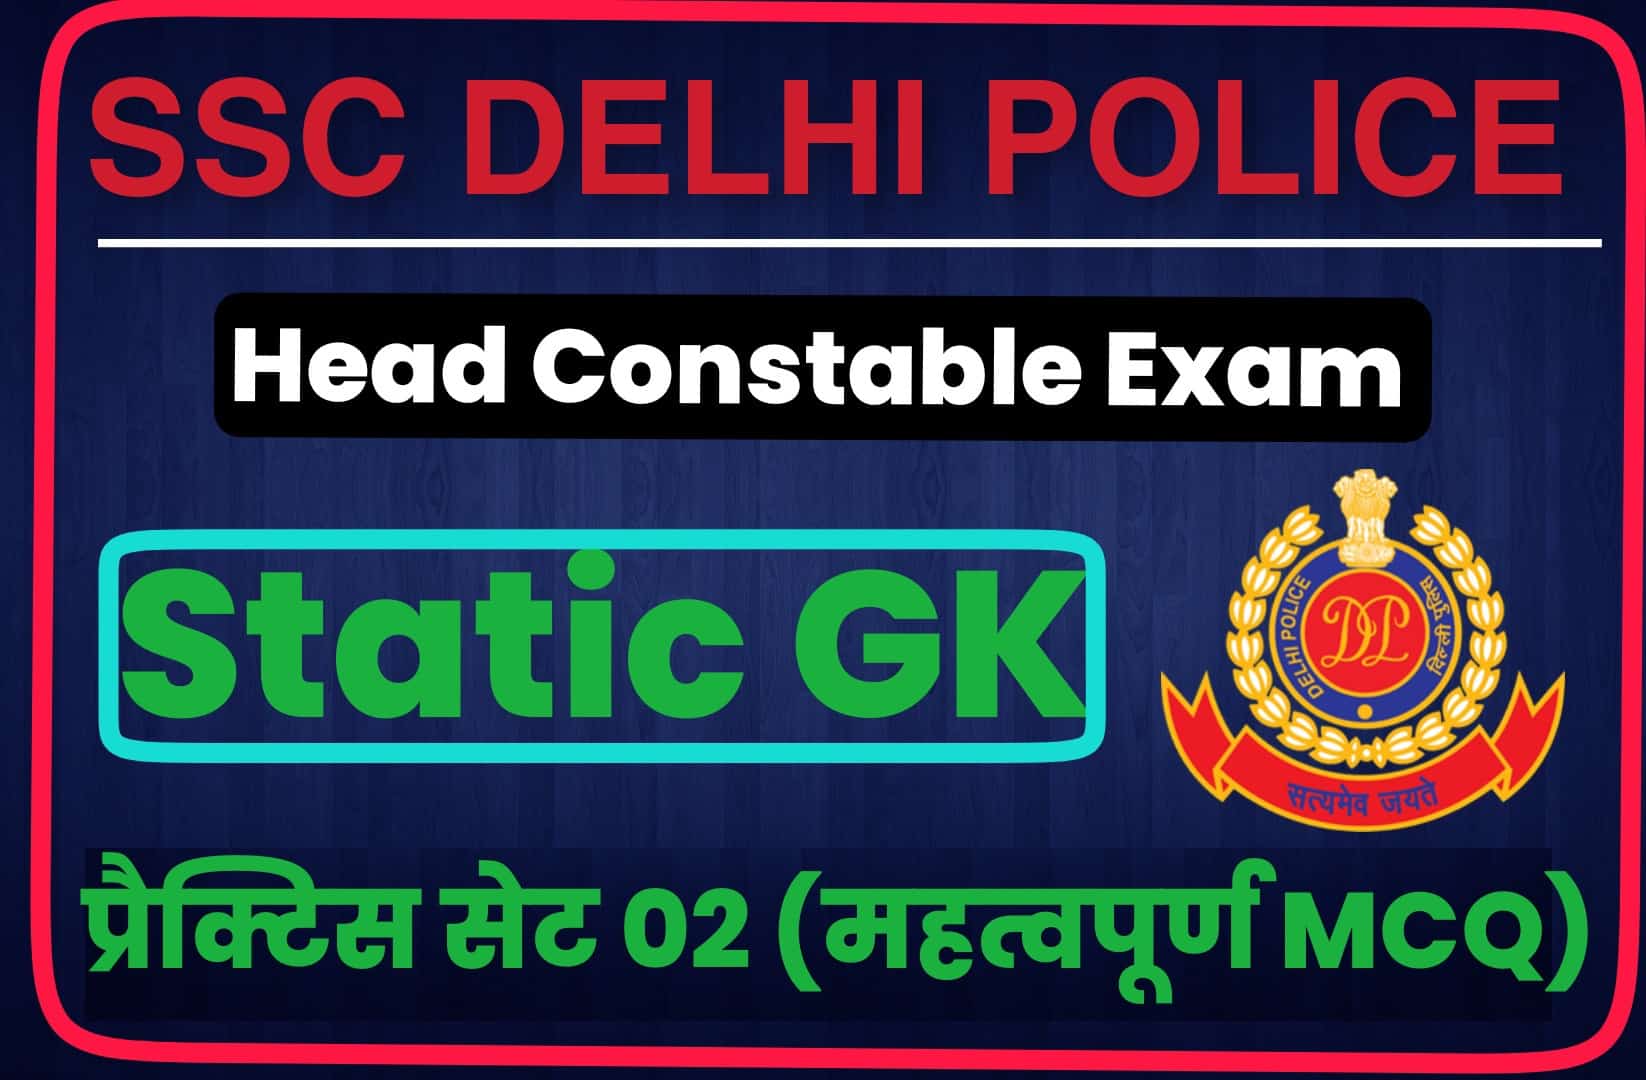 SSC Delhi Police Head Constable Static GK Practice Set 02 | परीक्षा हेतु महत्वपूर्ण प्रश्न, जरूर पढ़ें